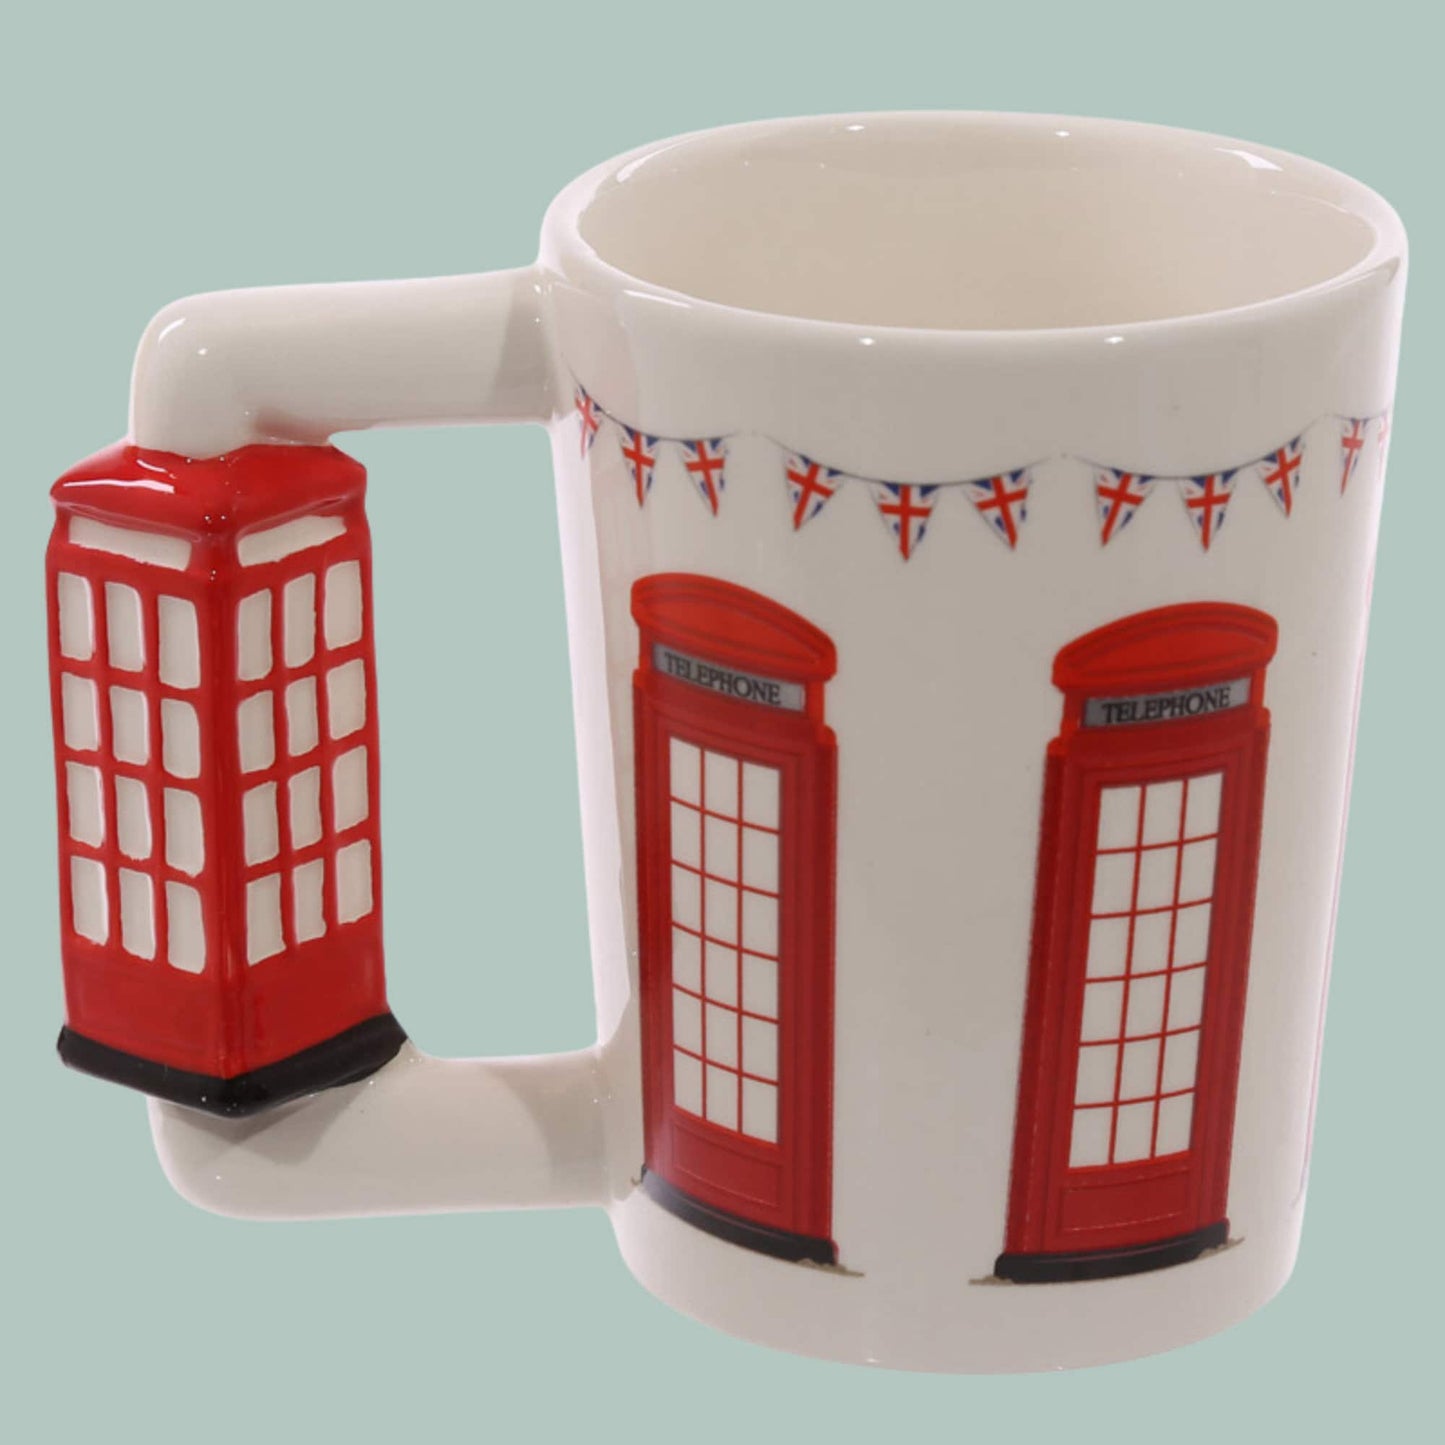 Novelty London Phone Box Handle Ceramic Mug